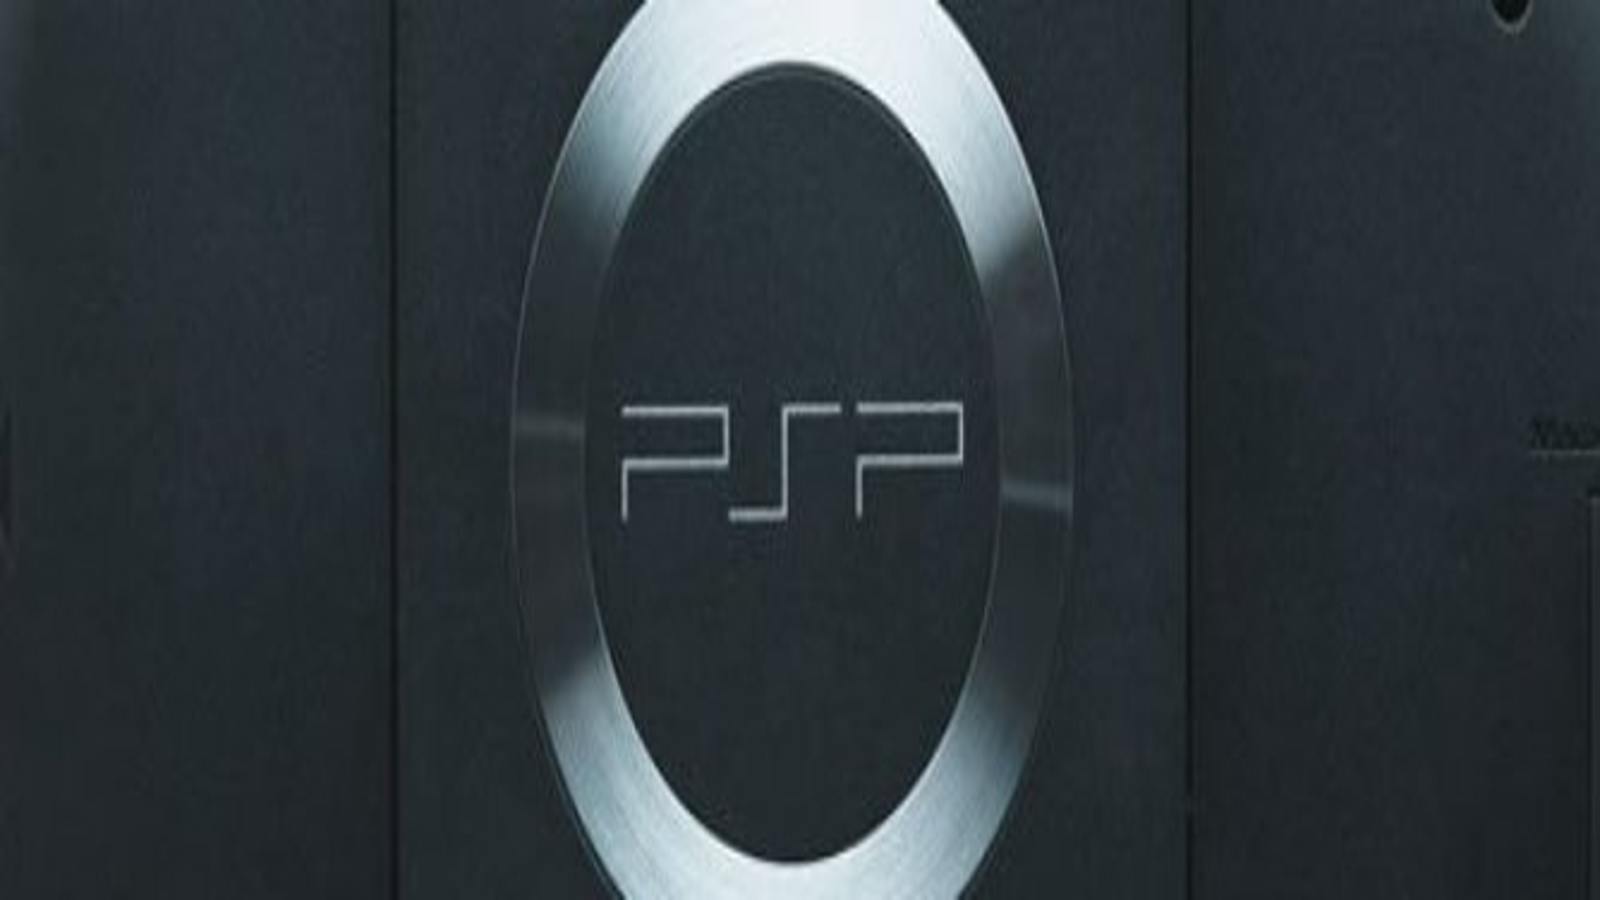 psp logo wallpaper